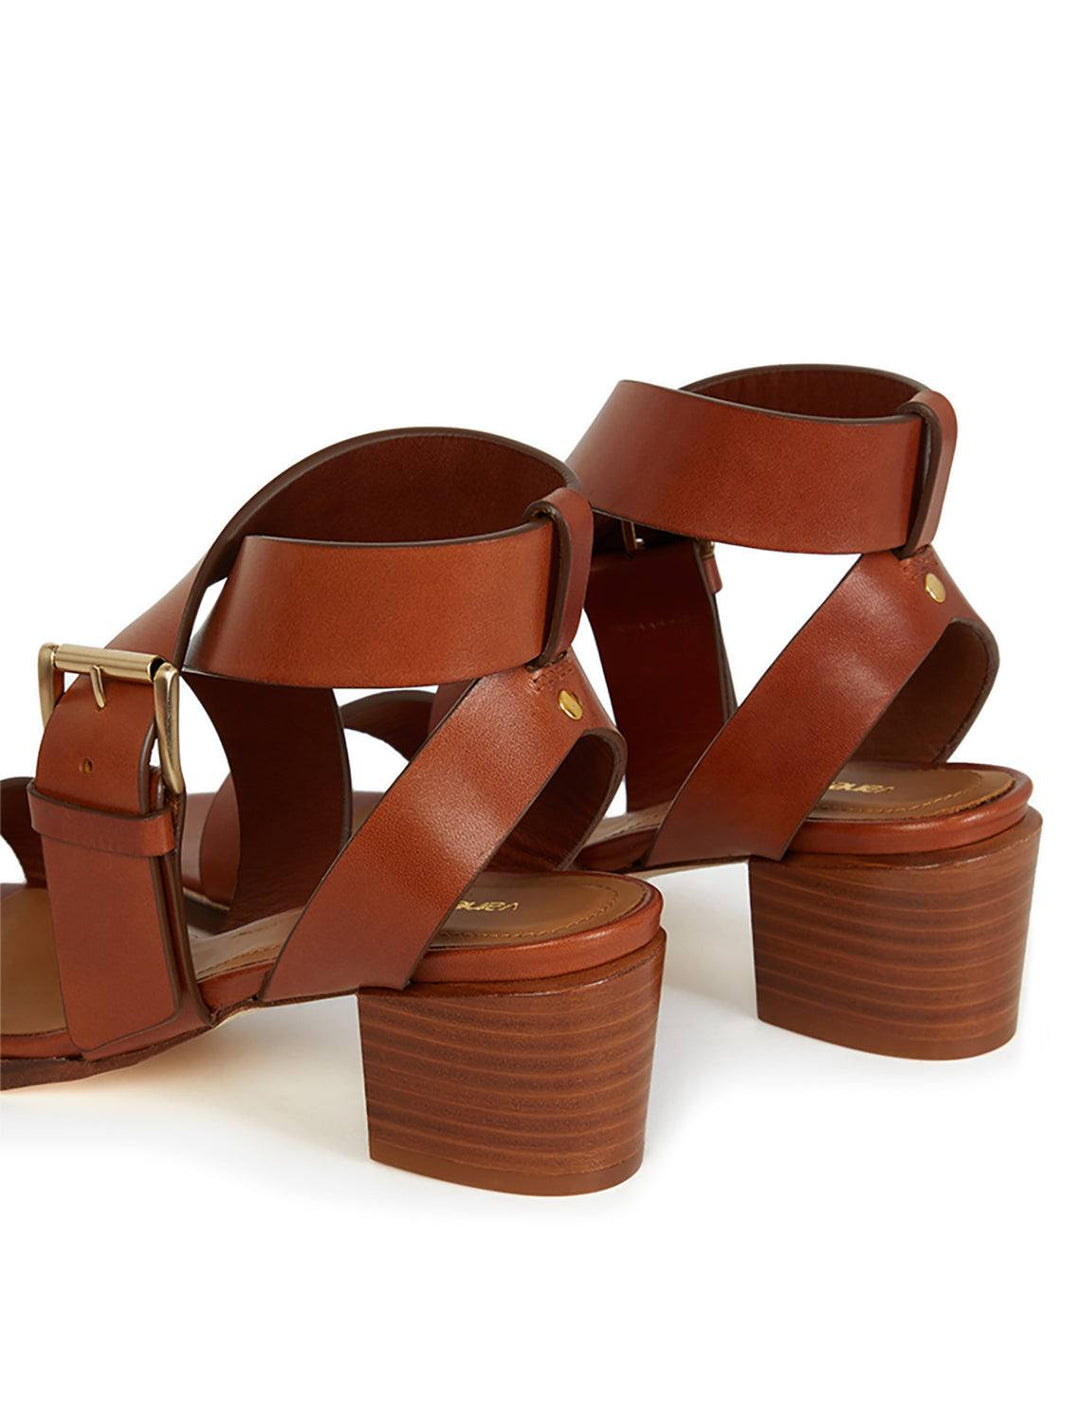 Close-up view of Vanessa Bruno's wrap sandals in cognac | 45mm heel.